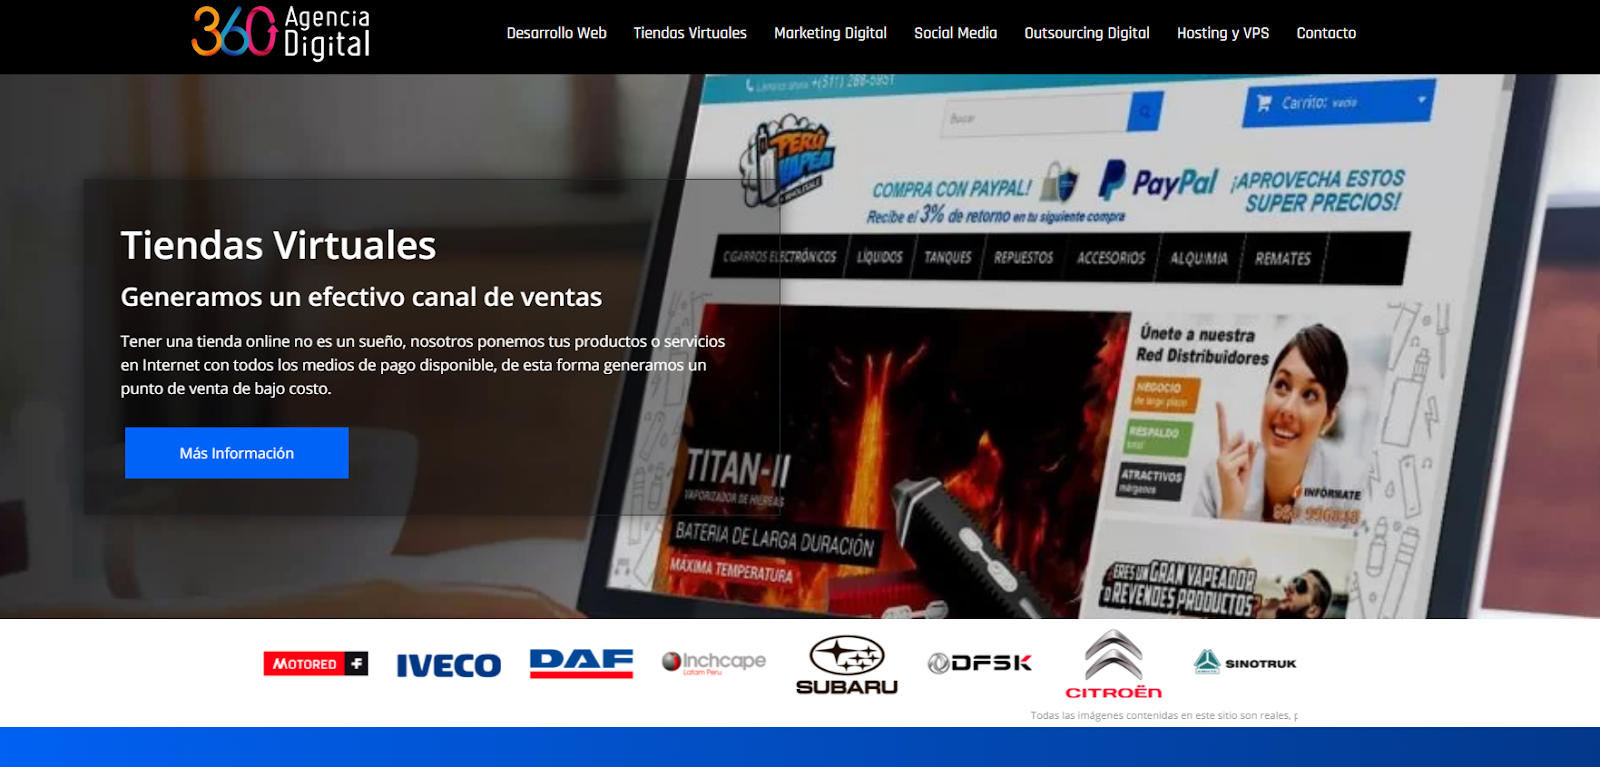 360 Agencia Digital - Agencias de Marketing Digital en Perú